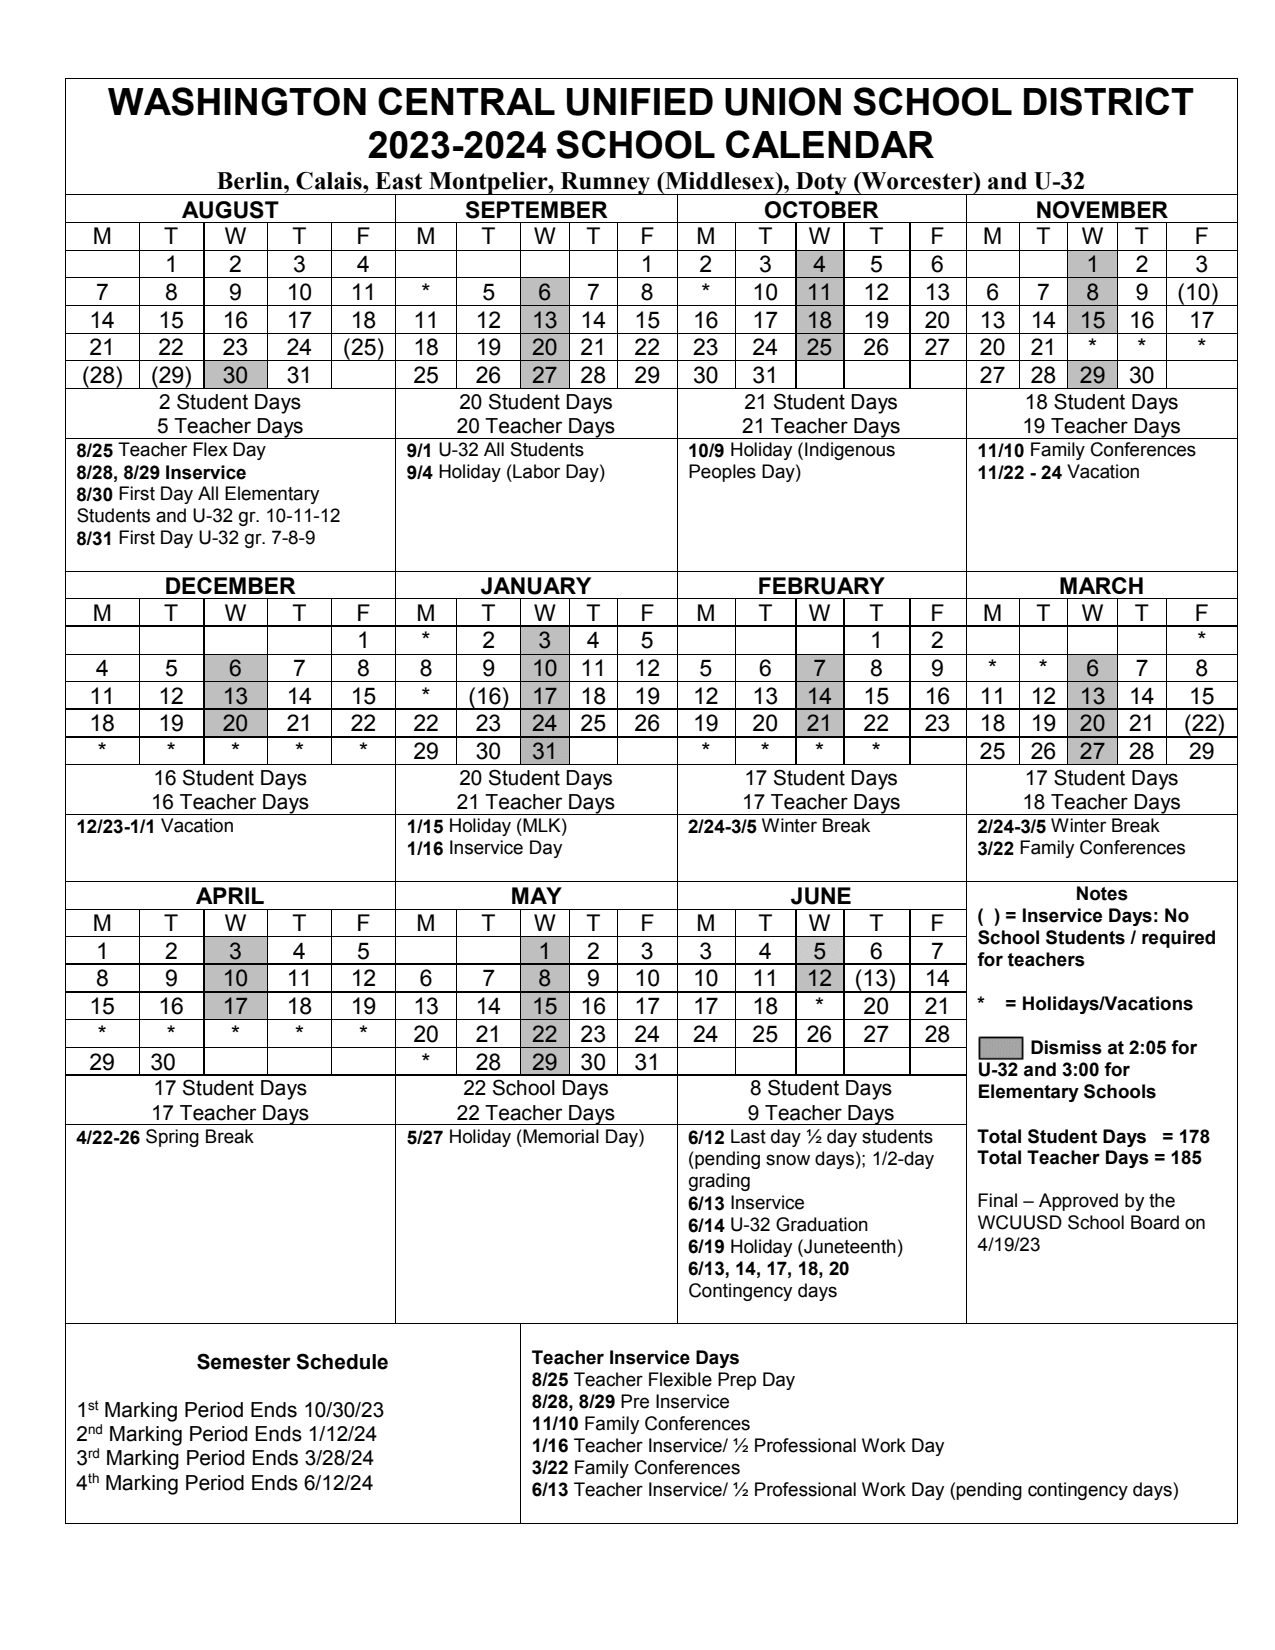 School Year Calendar U 32 MSHS